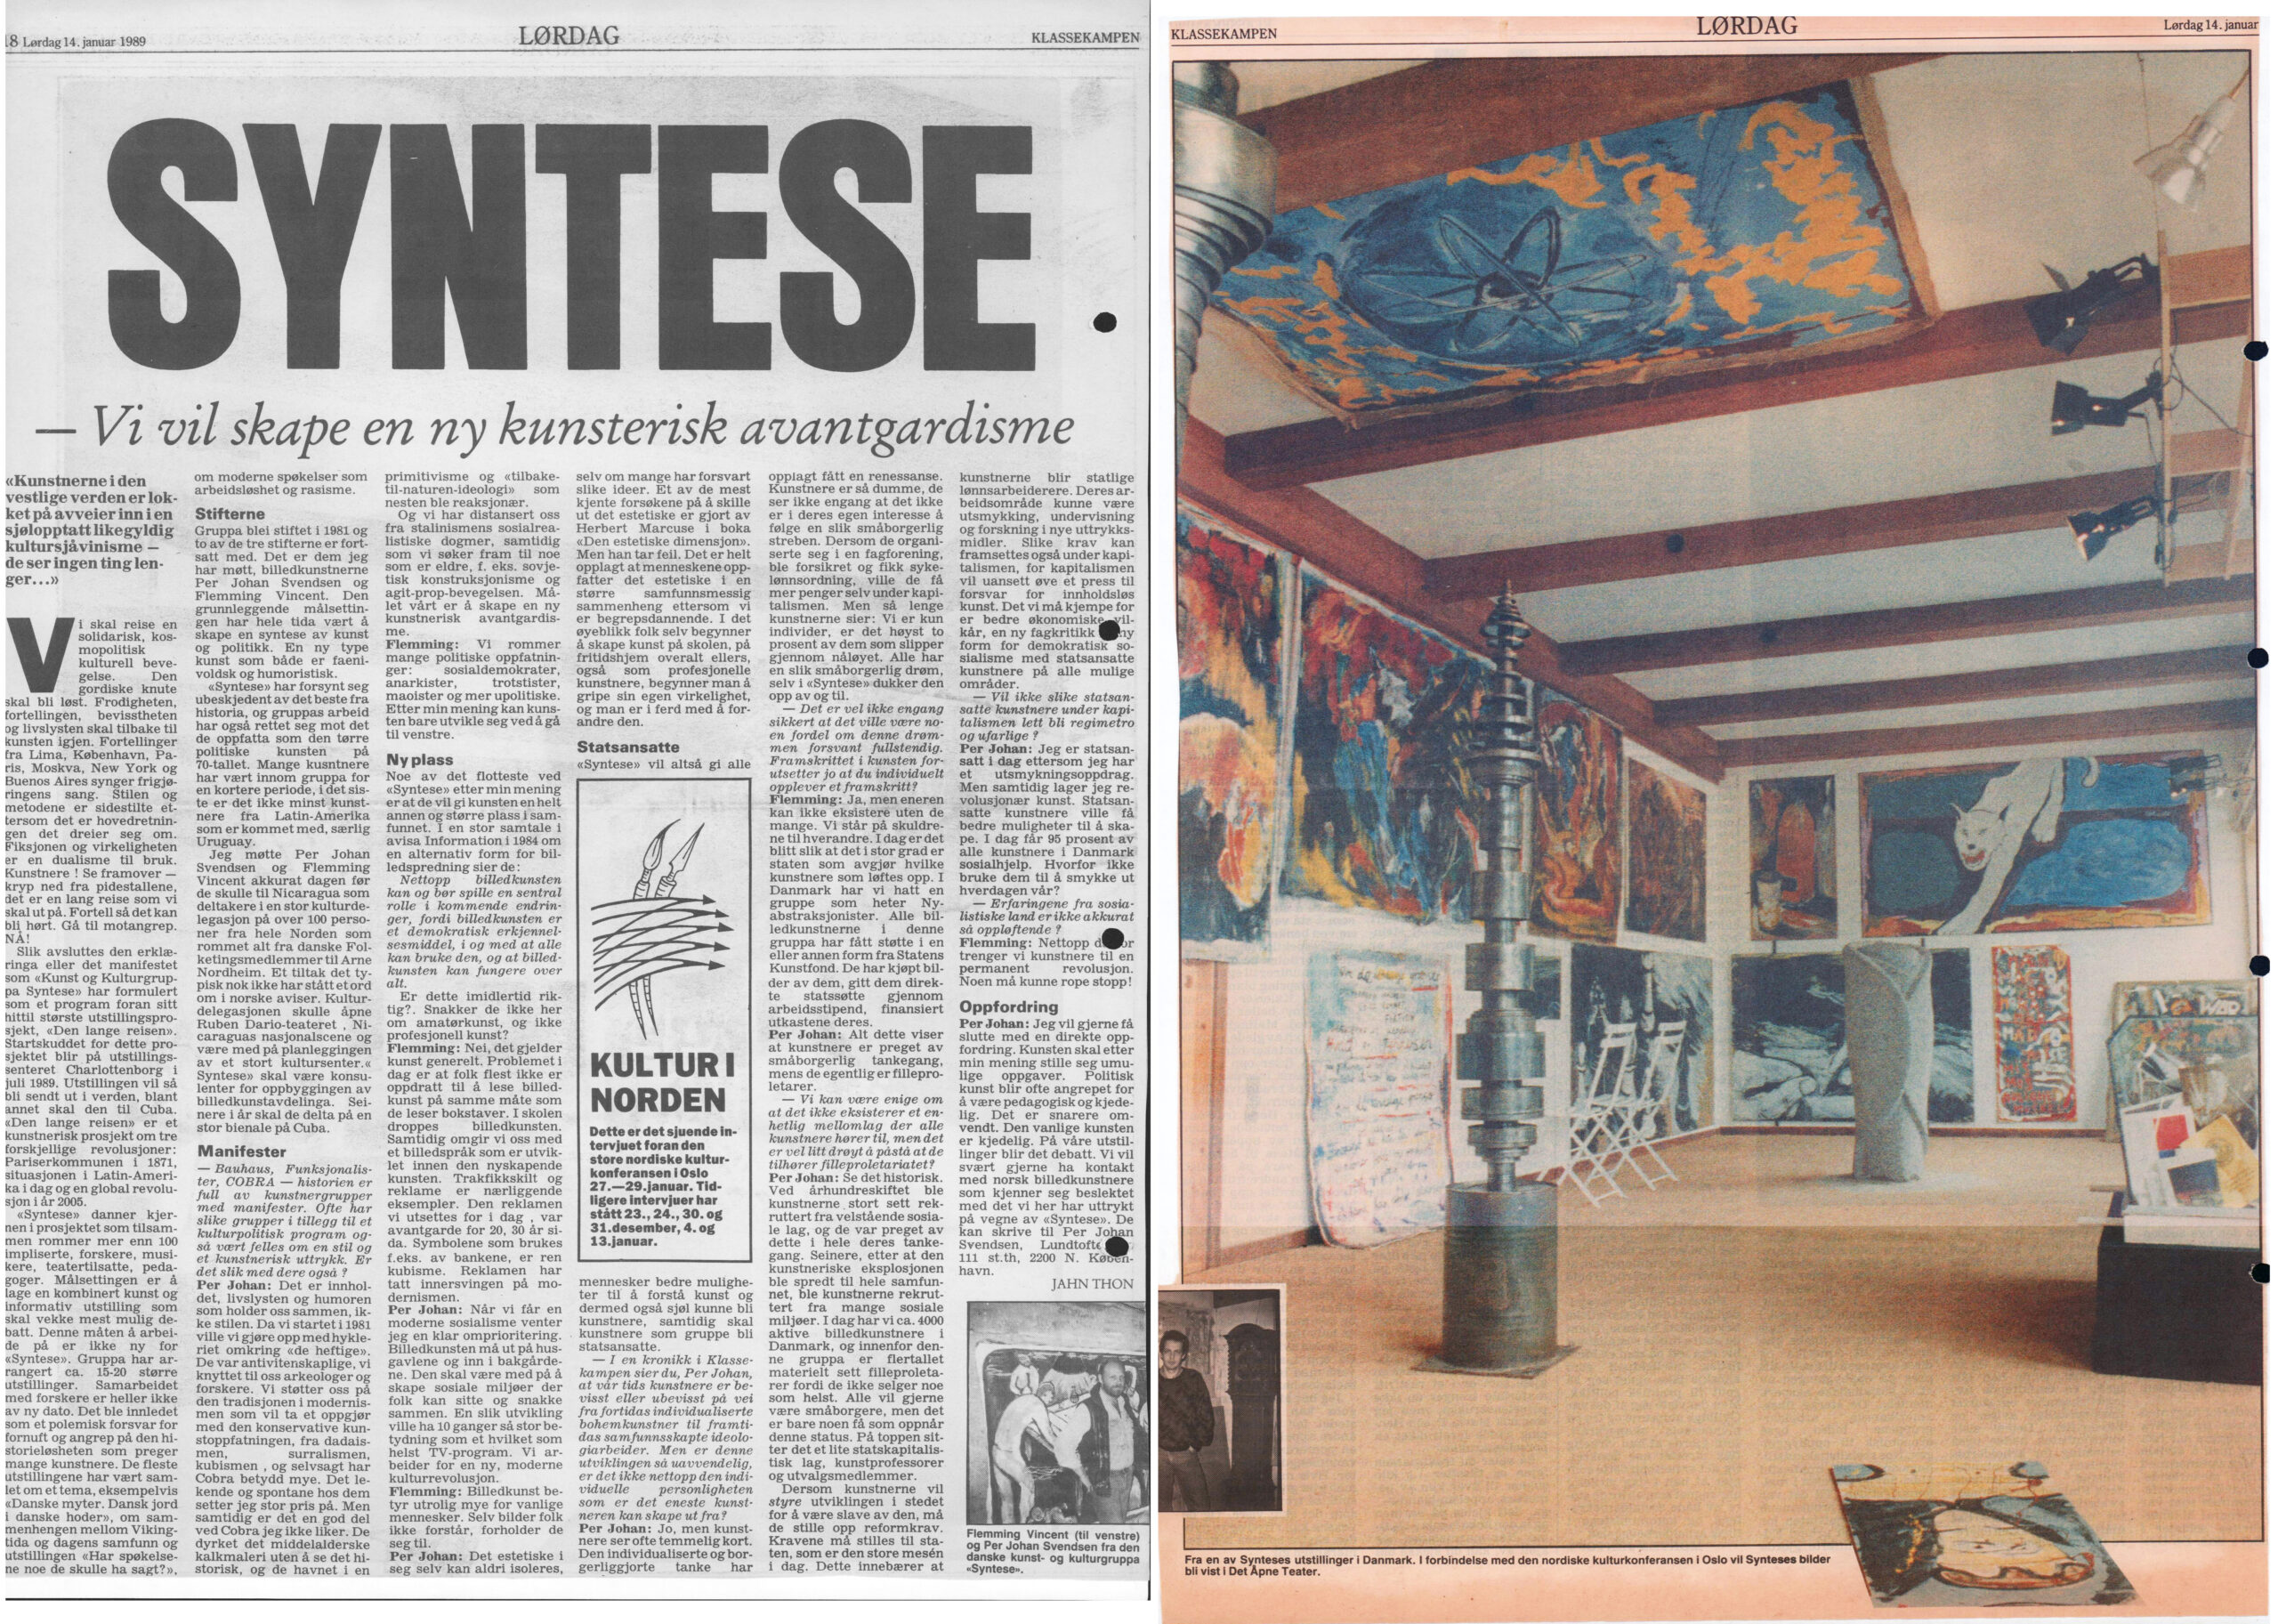 Syntese. Interview (Nordisk kulturkonference. Mot strømmen 1989, Oslo). Jahn Thon. Norsk Klassekampen.